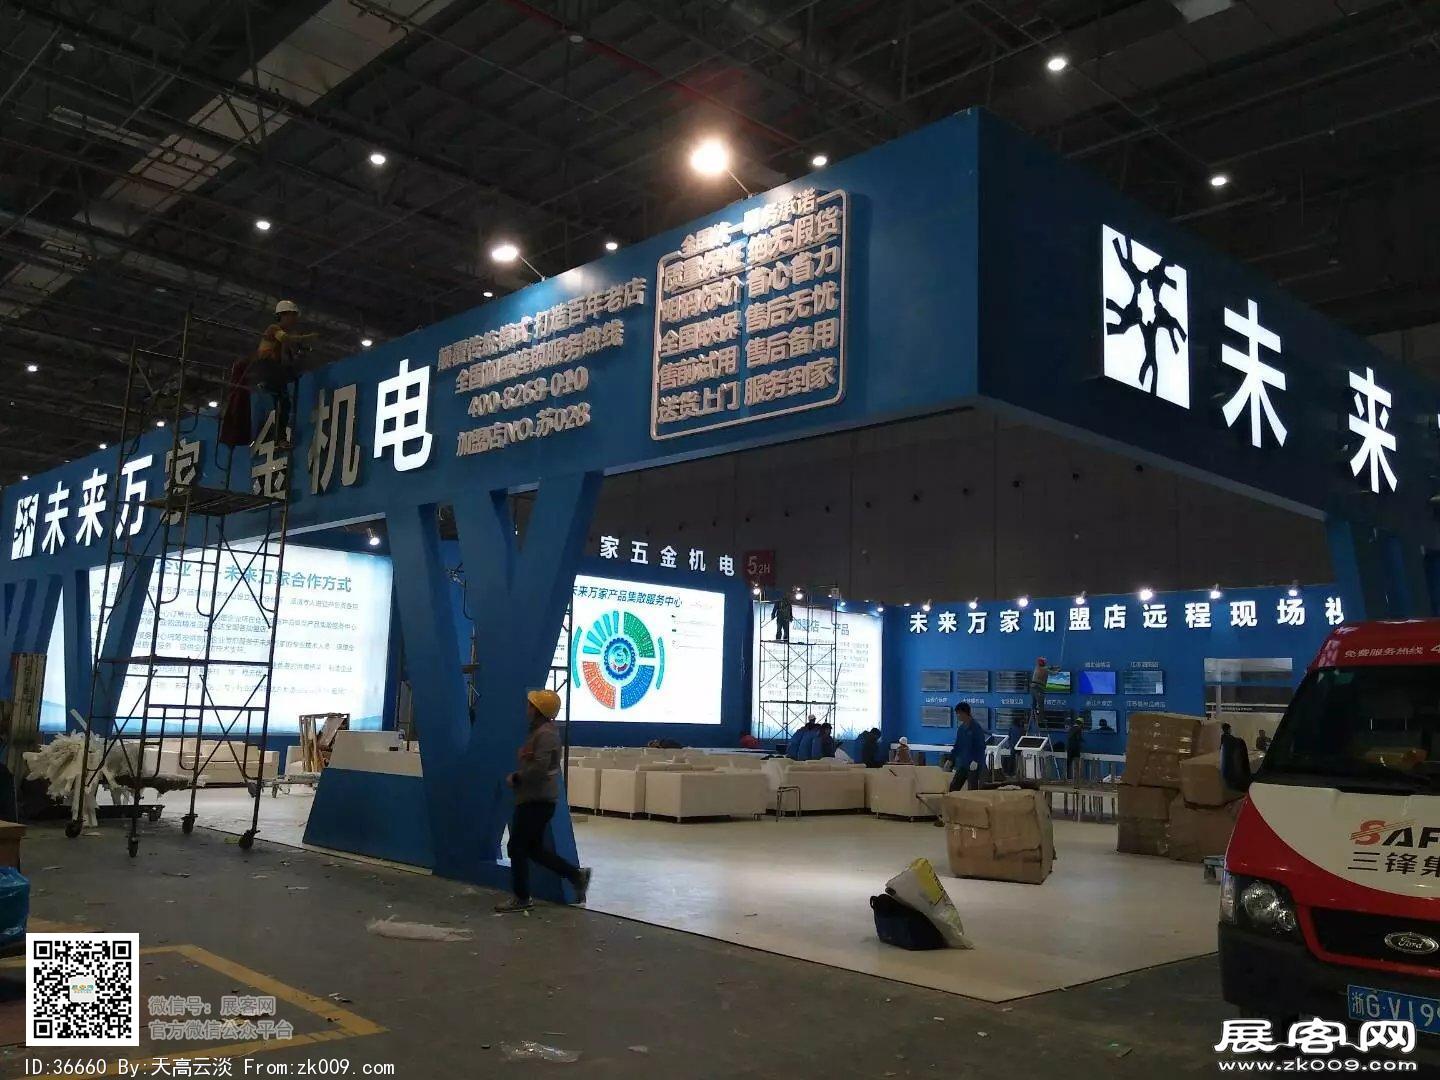 2018年上海工具博览会